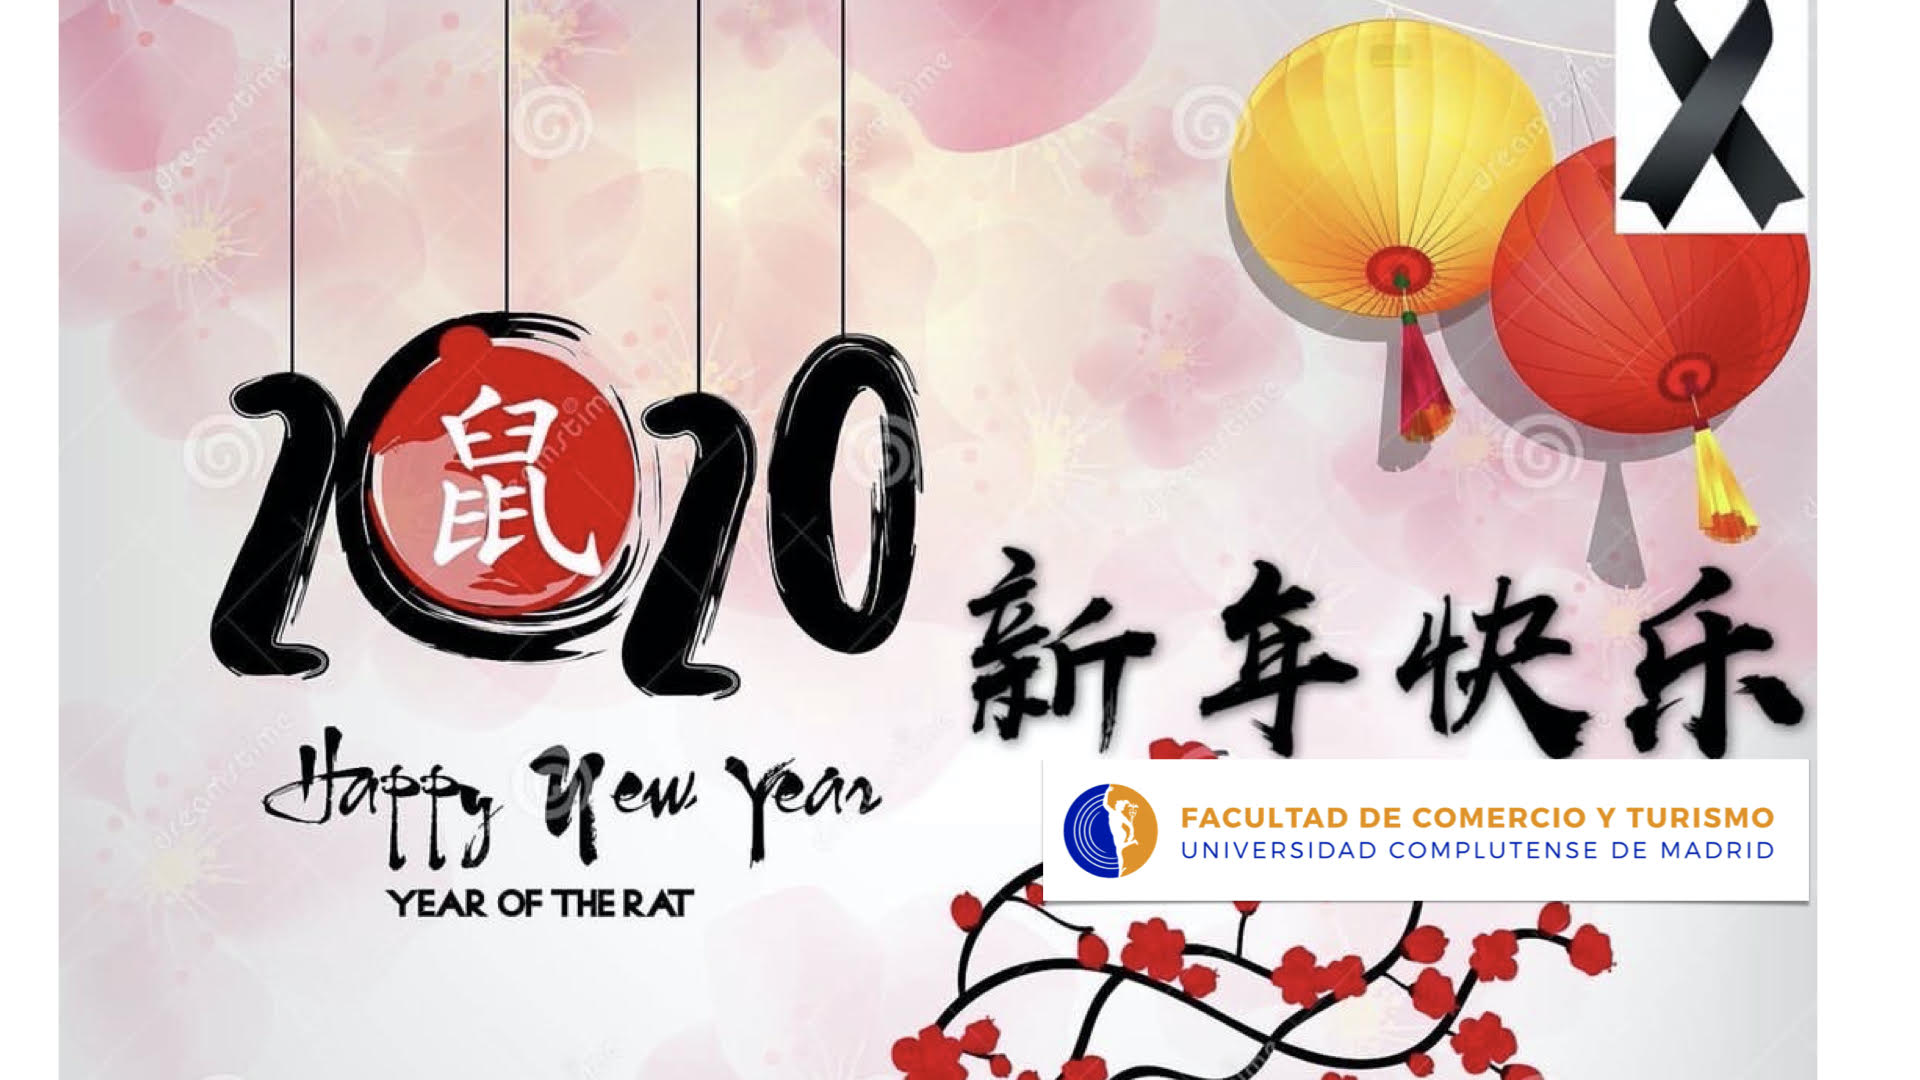 La Facultad de Comercio y Turismo felicita el Año Nuevo Chino